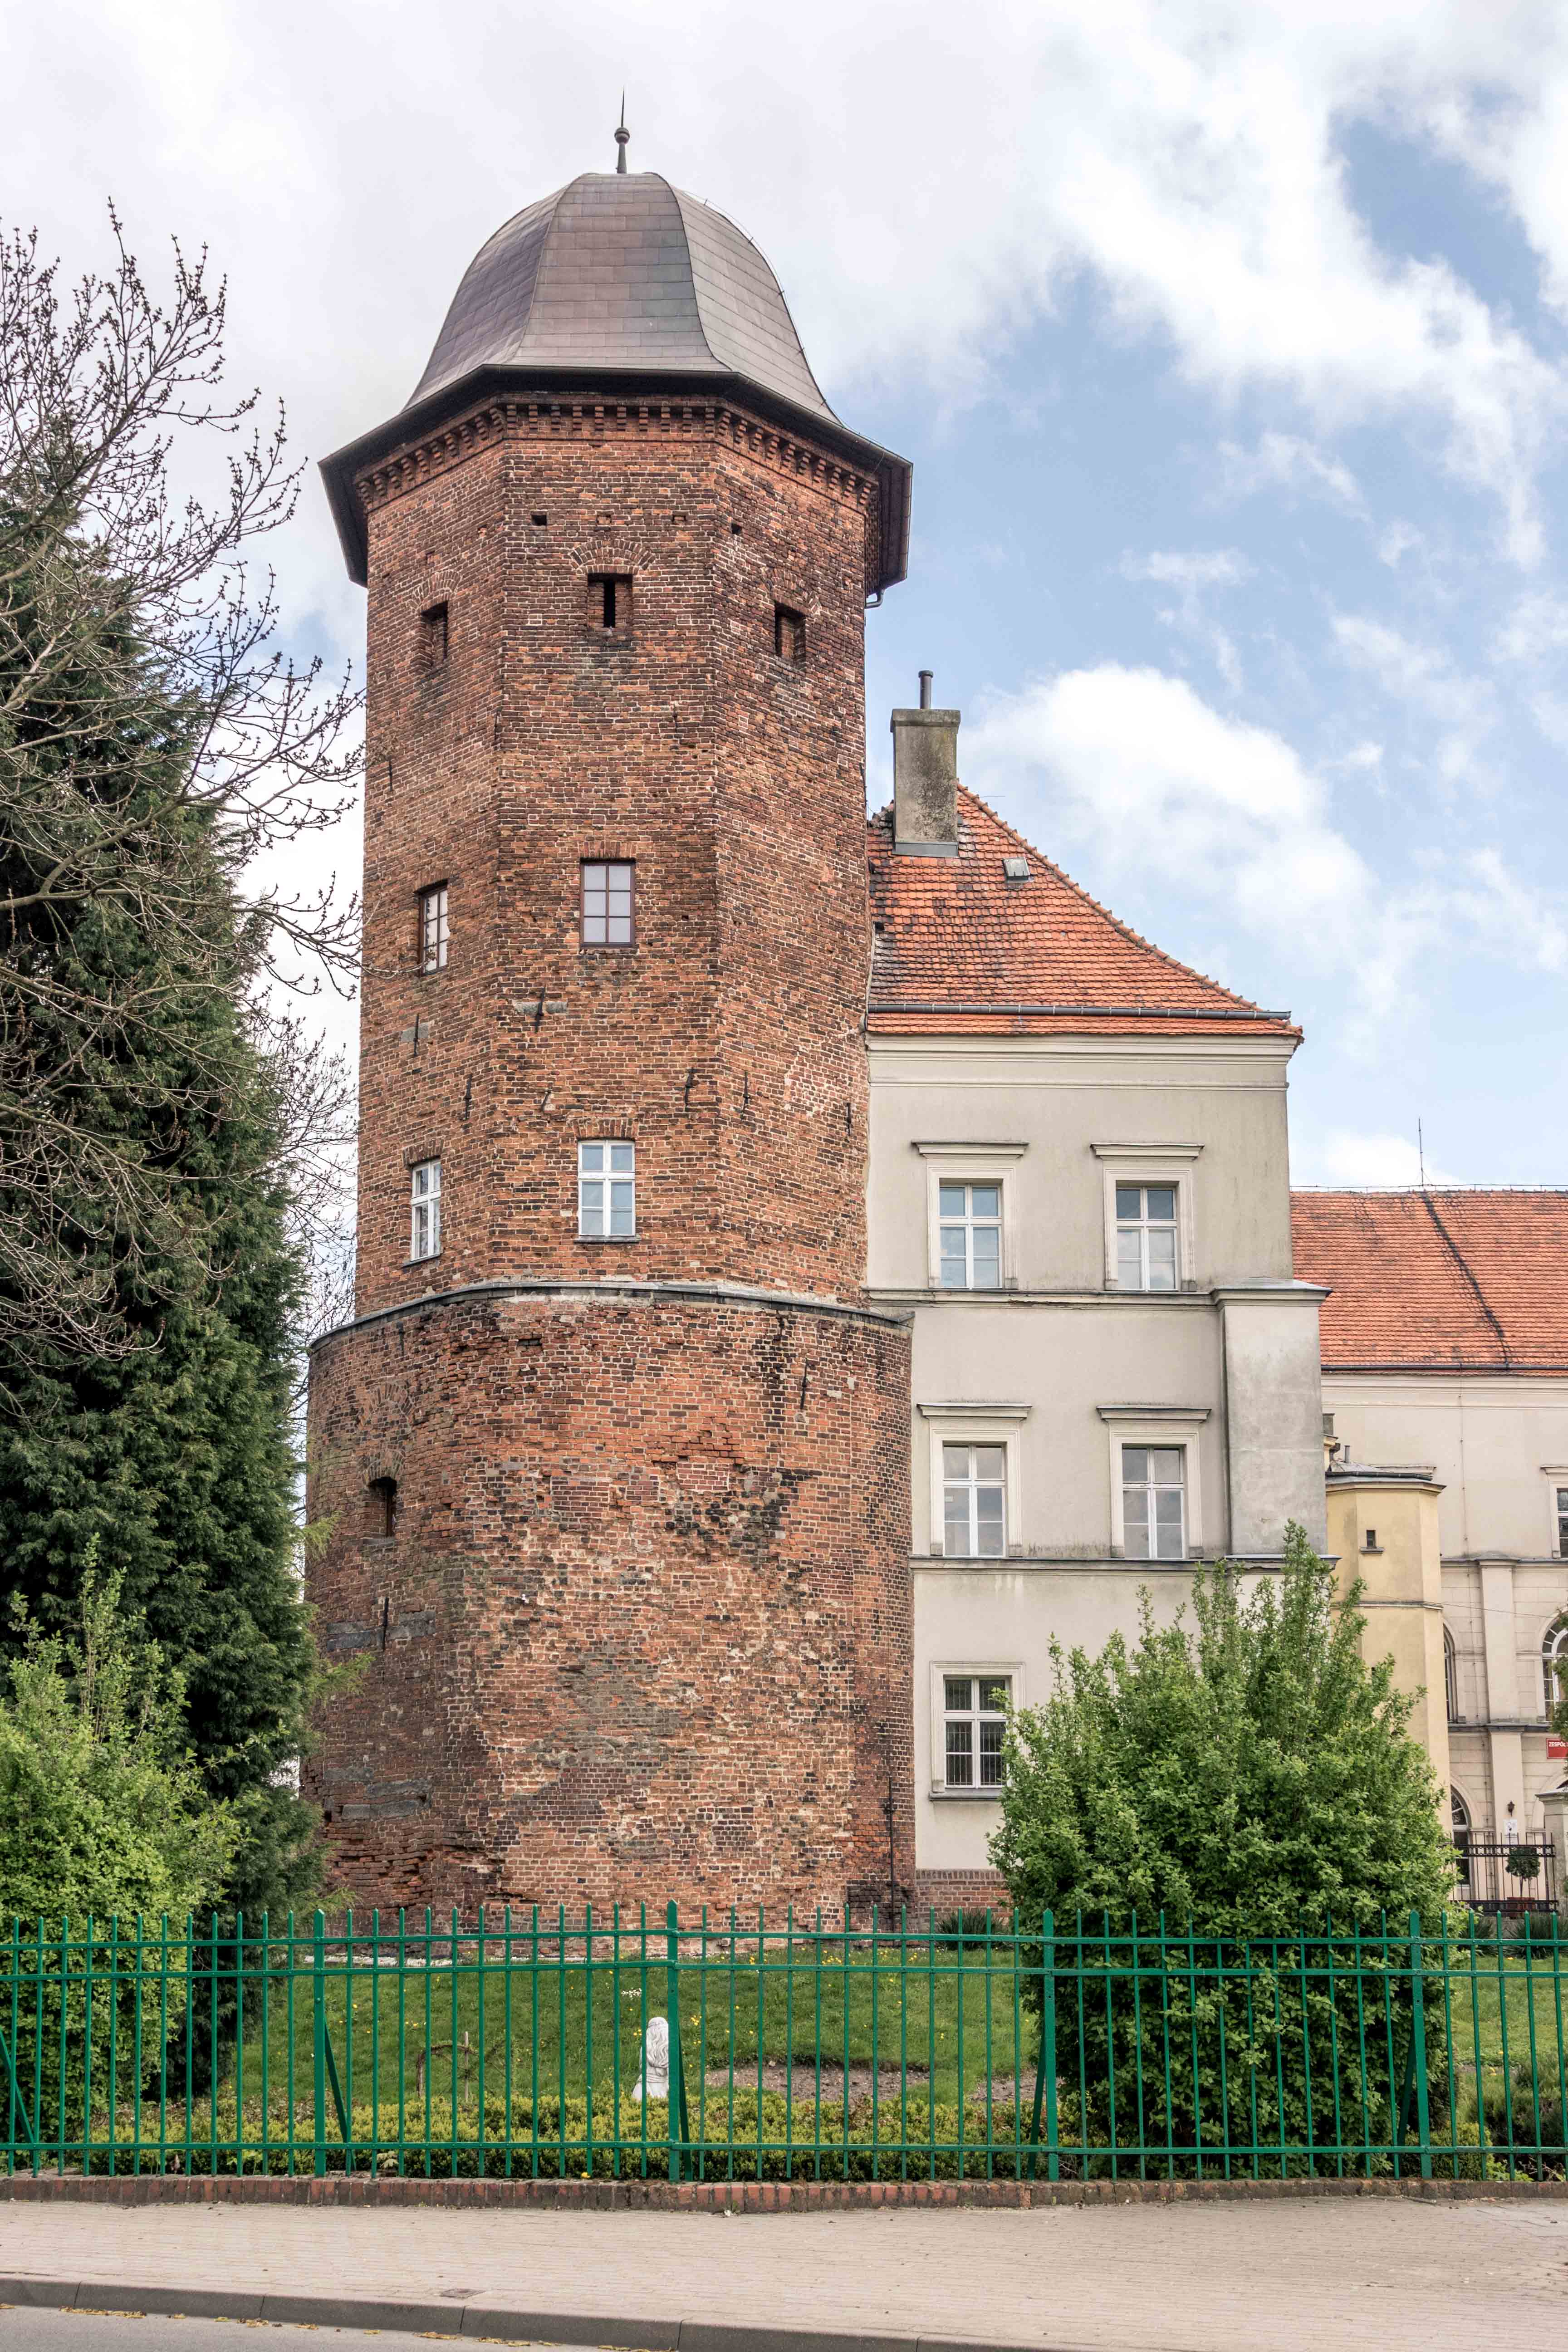 Zamek w Koźminie Wielkopolskim